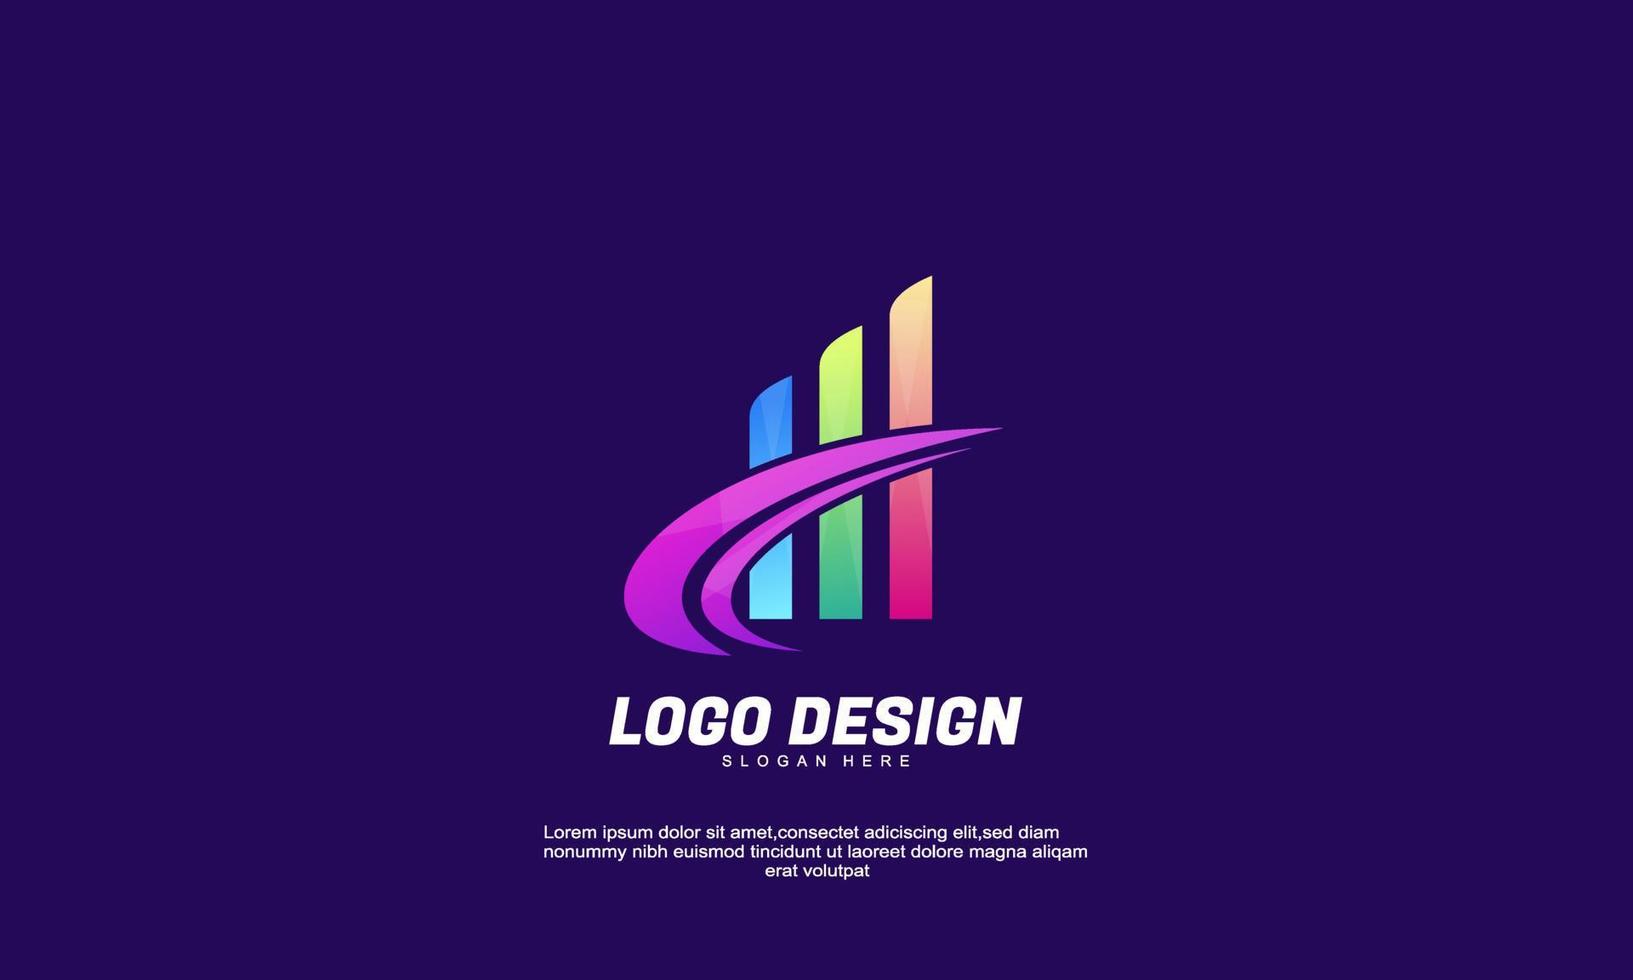 Stock Vektor abstrakte kreative Logo-Idee Finanzen für Markenidentität Unternehmen Corporate oder Business Farbverlauf Farbdesign-Vorlage